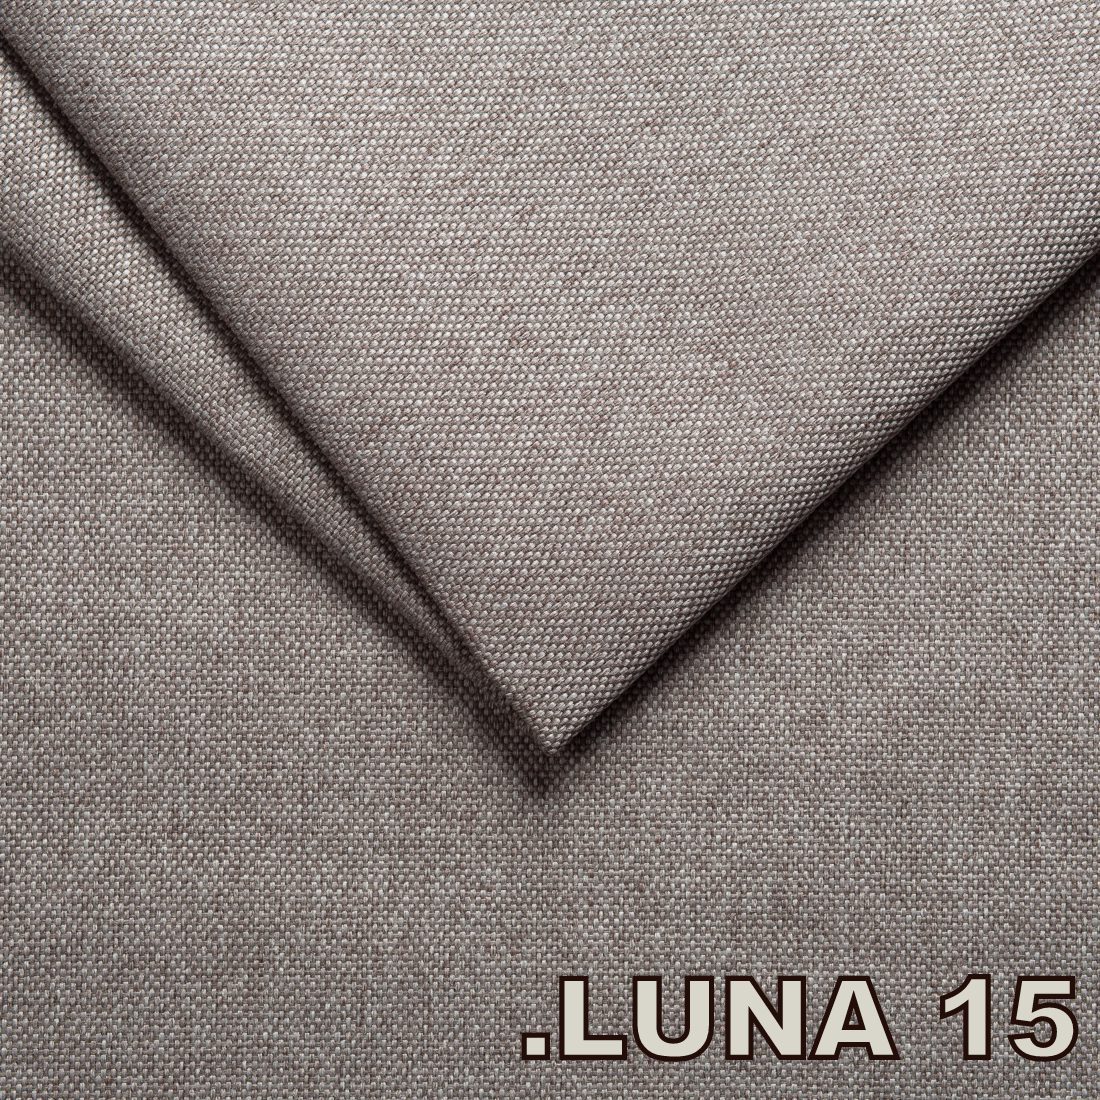 Luna 15 Silver (Tissu Tweed structure fine)